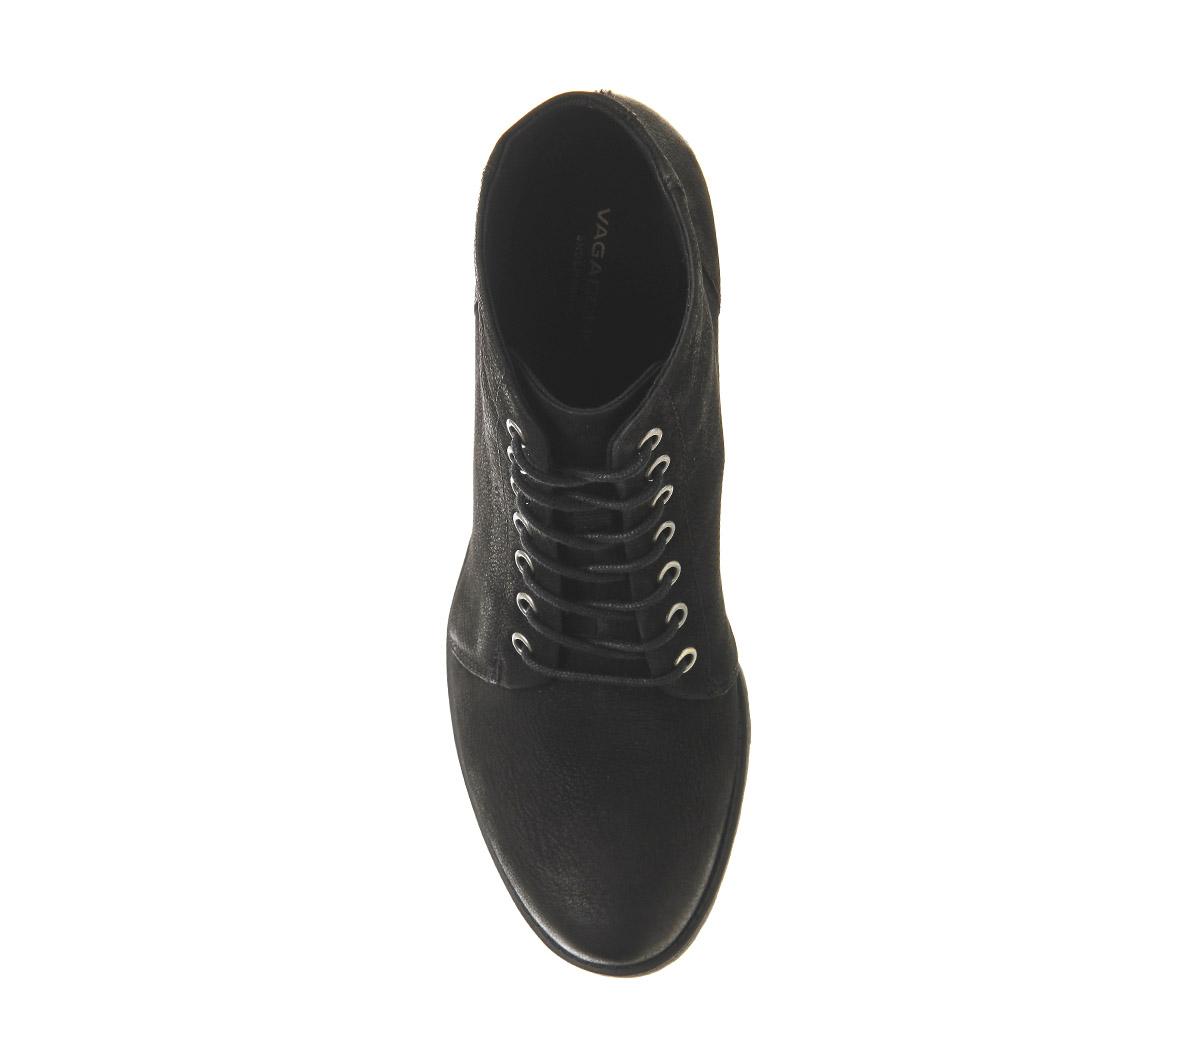 Vagabond Shoemakers Grace Lace Up Boots Black Nubuck - Women's Ankle Boots